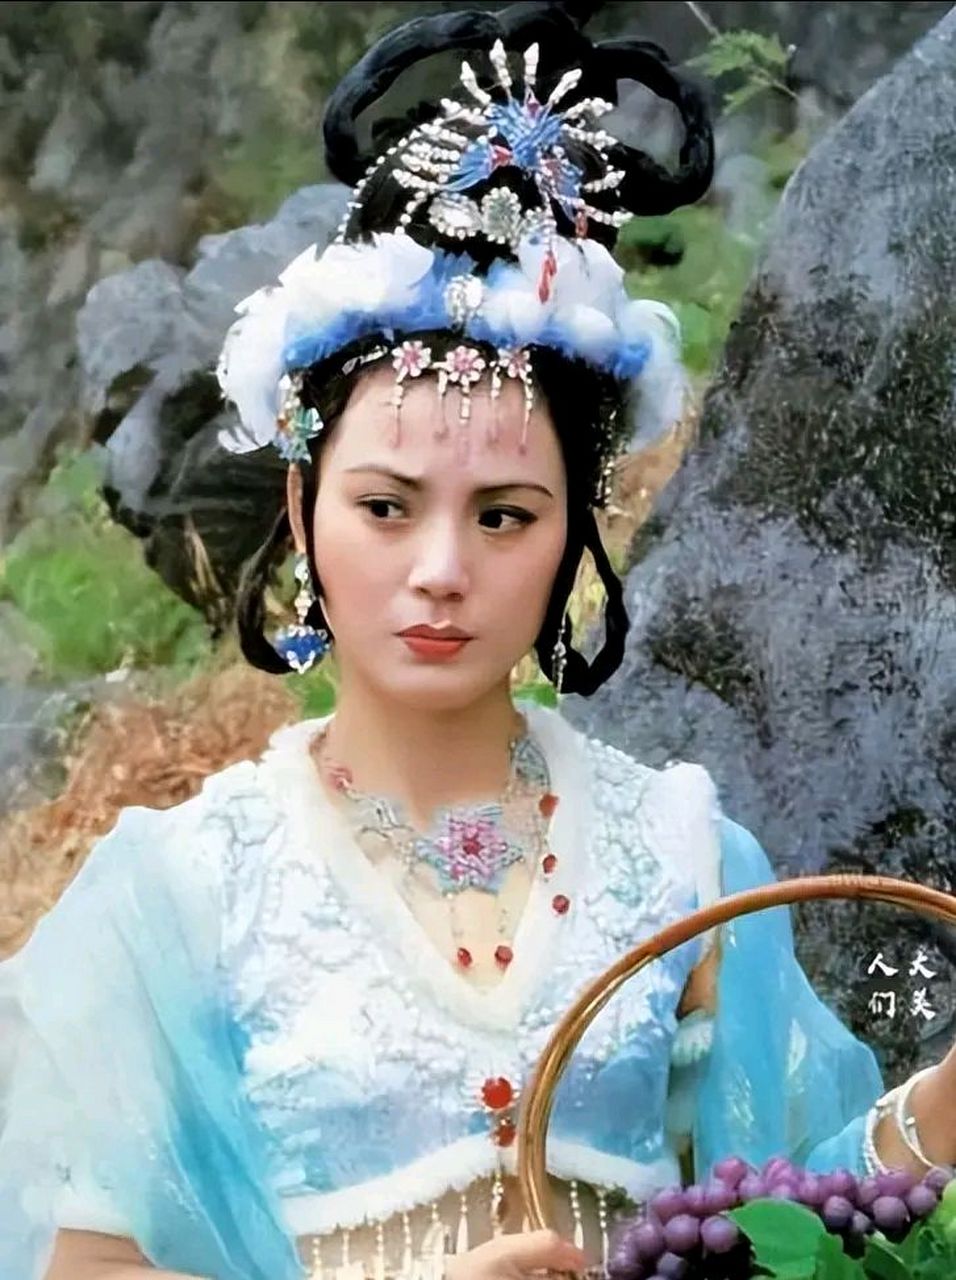 演员郑益萍,在西游记里扮演过玉面狐狸,是牛魔王的小妾,美貌又多金